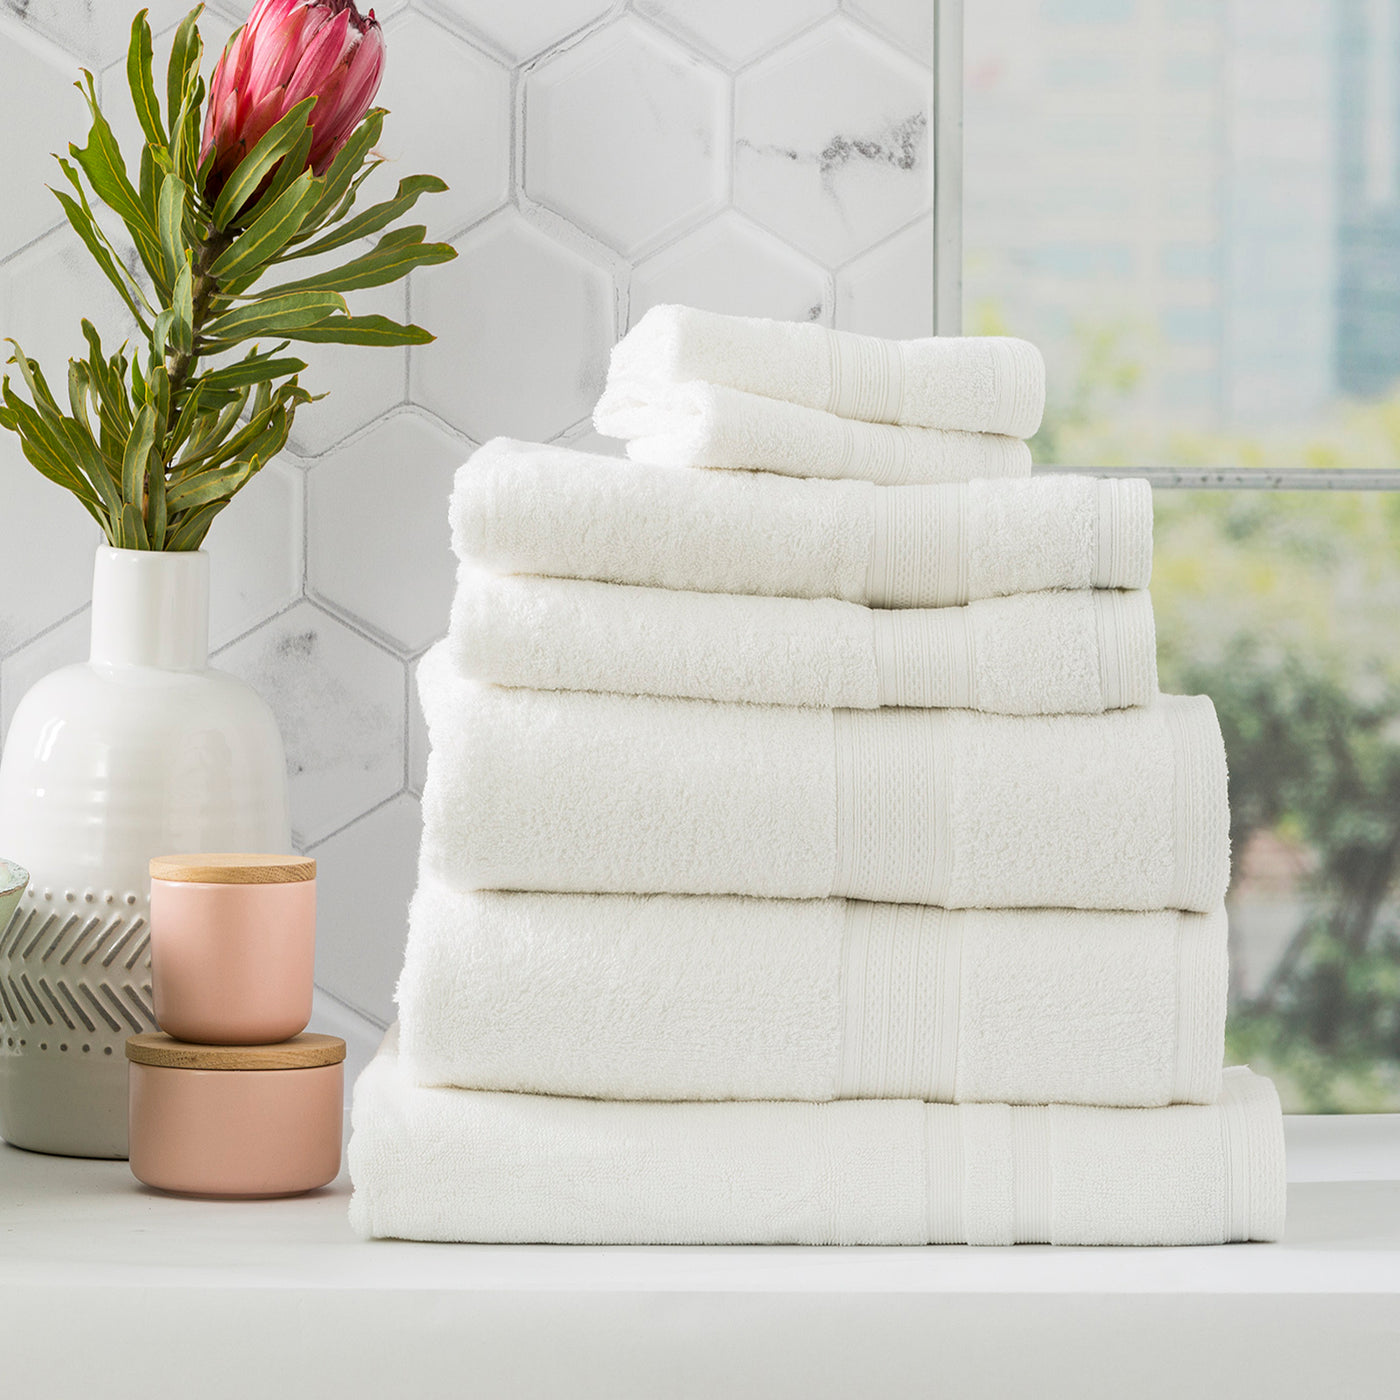 towels-sheridan towels-bath towels-hand towels-quick dry towels-bamboo towels-bathroom towels-best towels australia-green towels